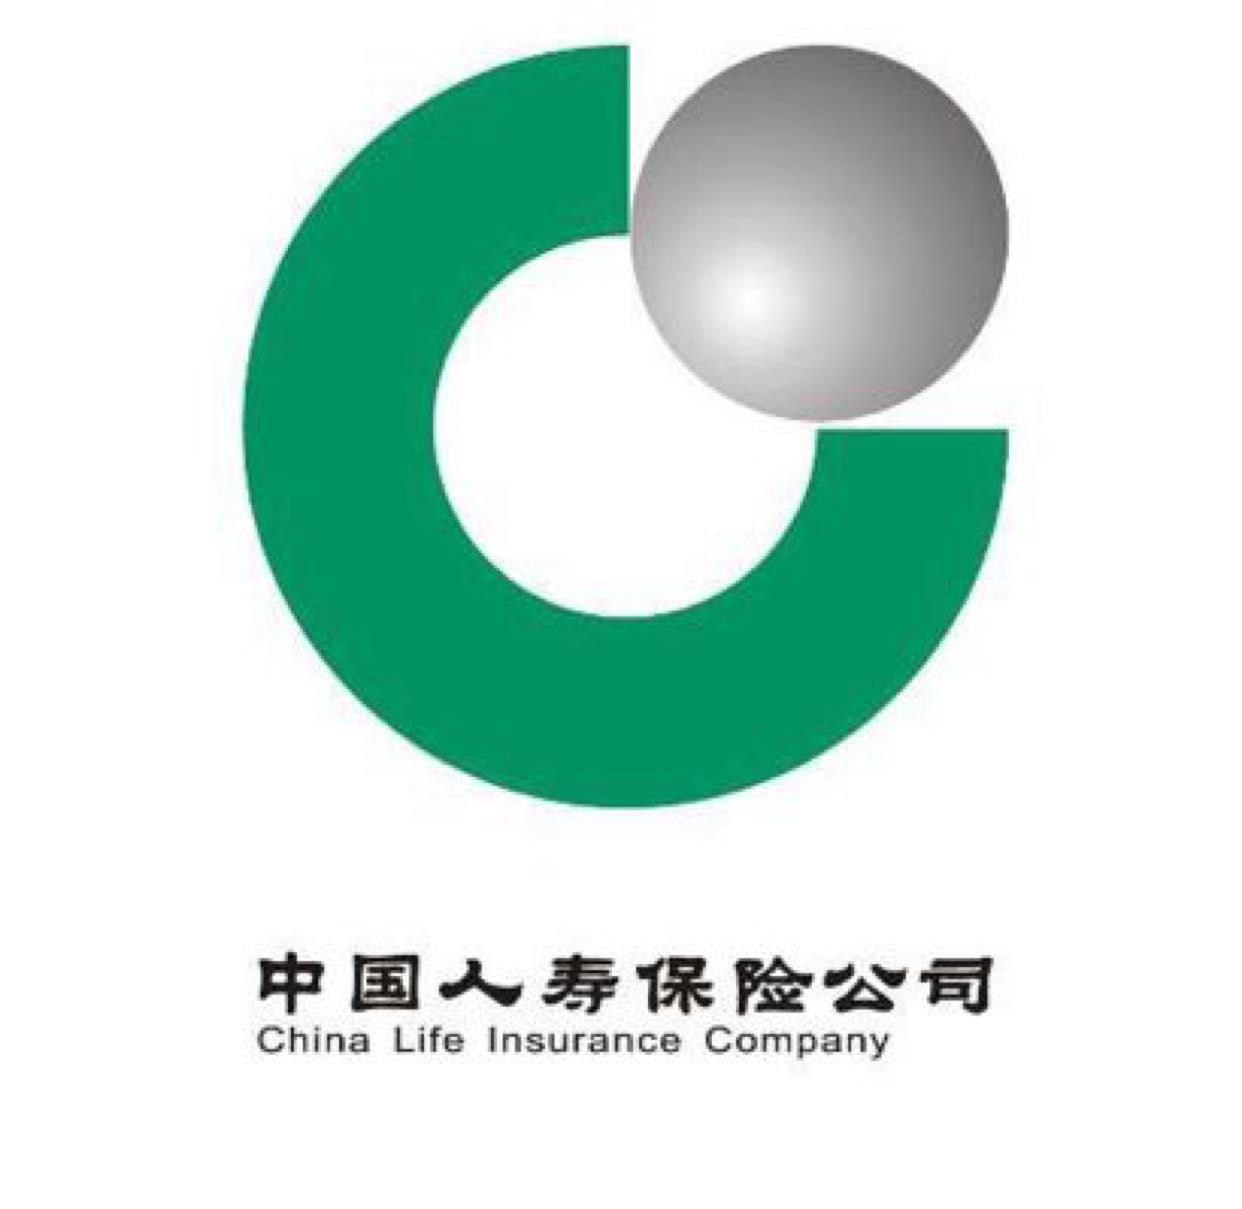 中国人寿保险公司照片图片